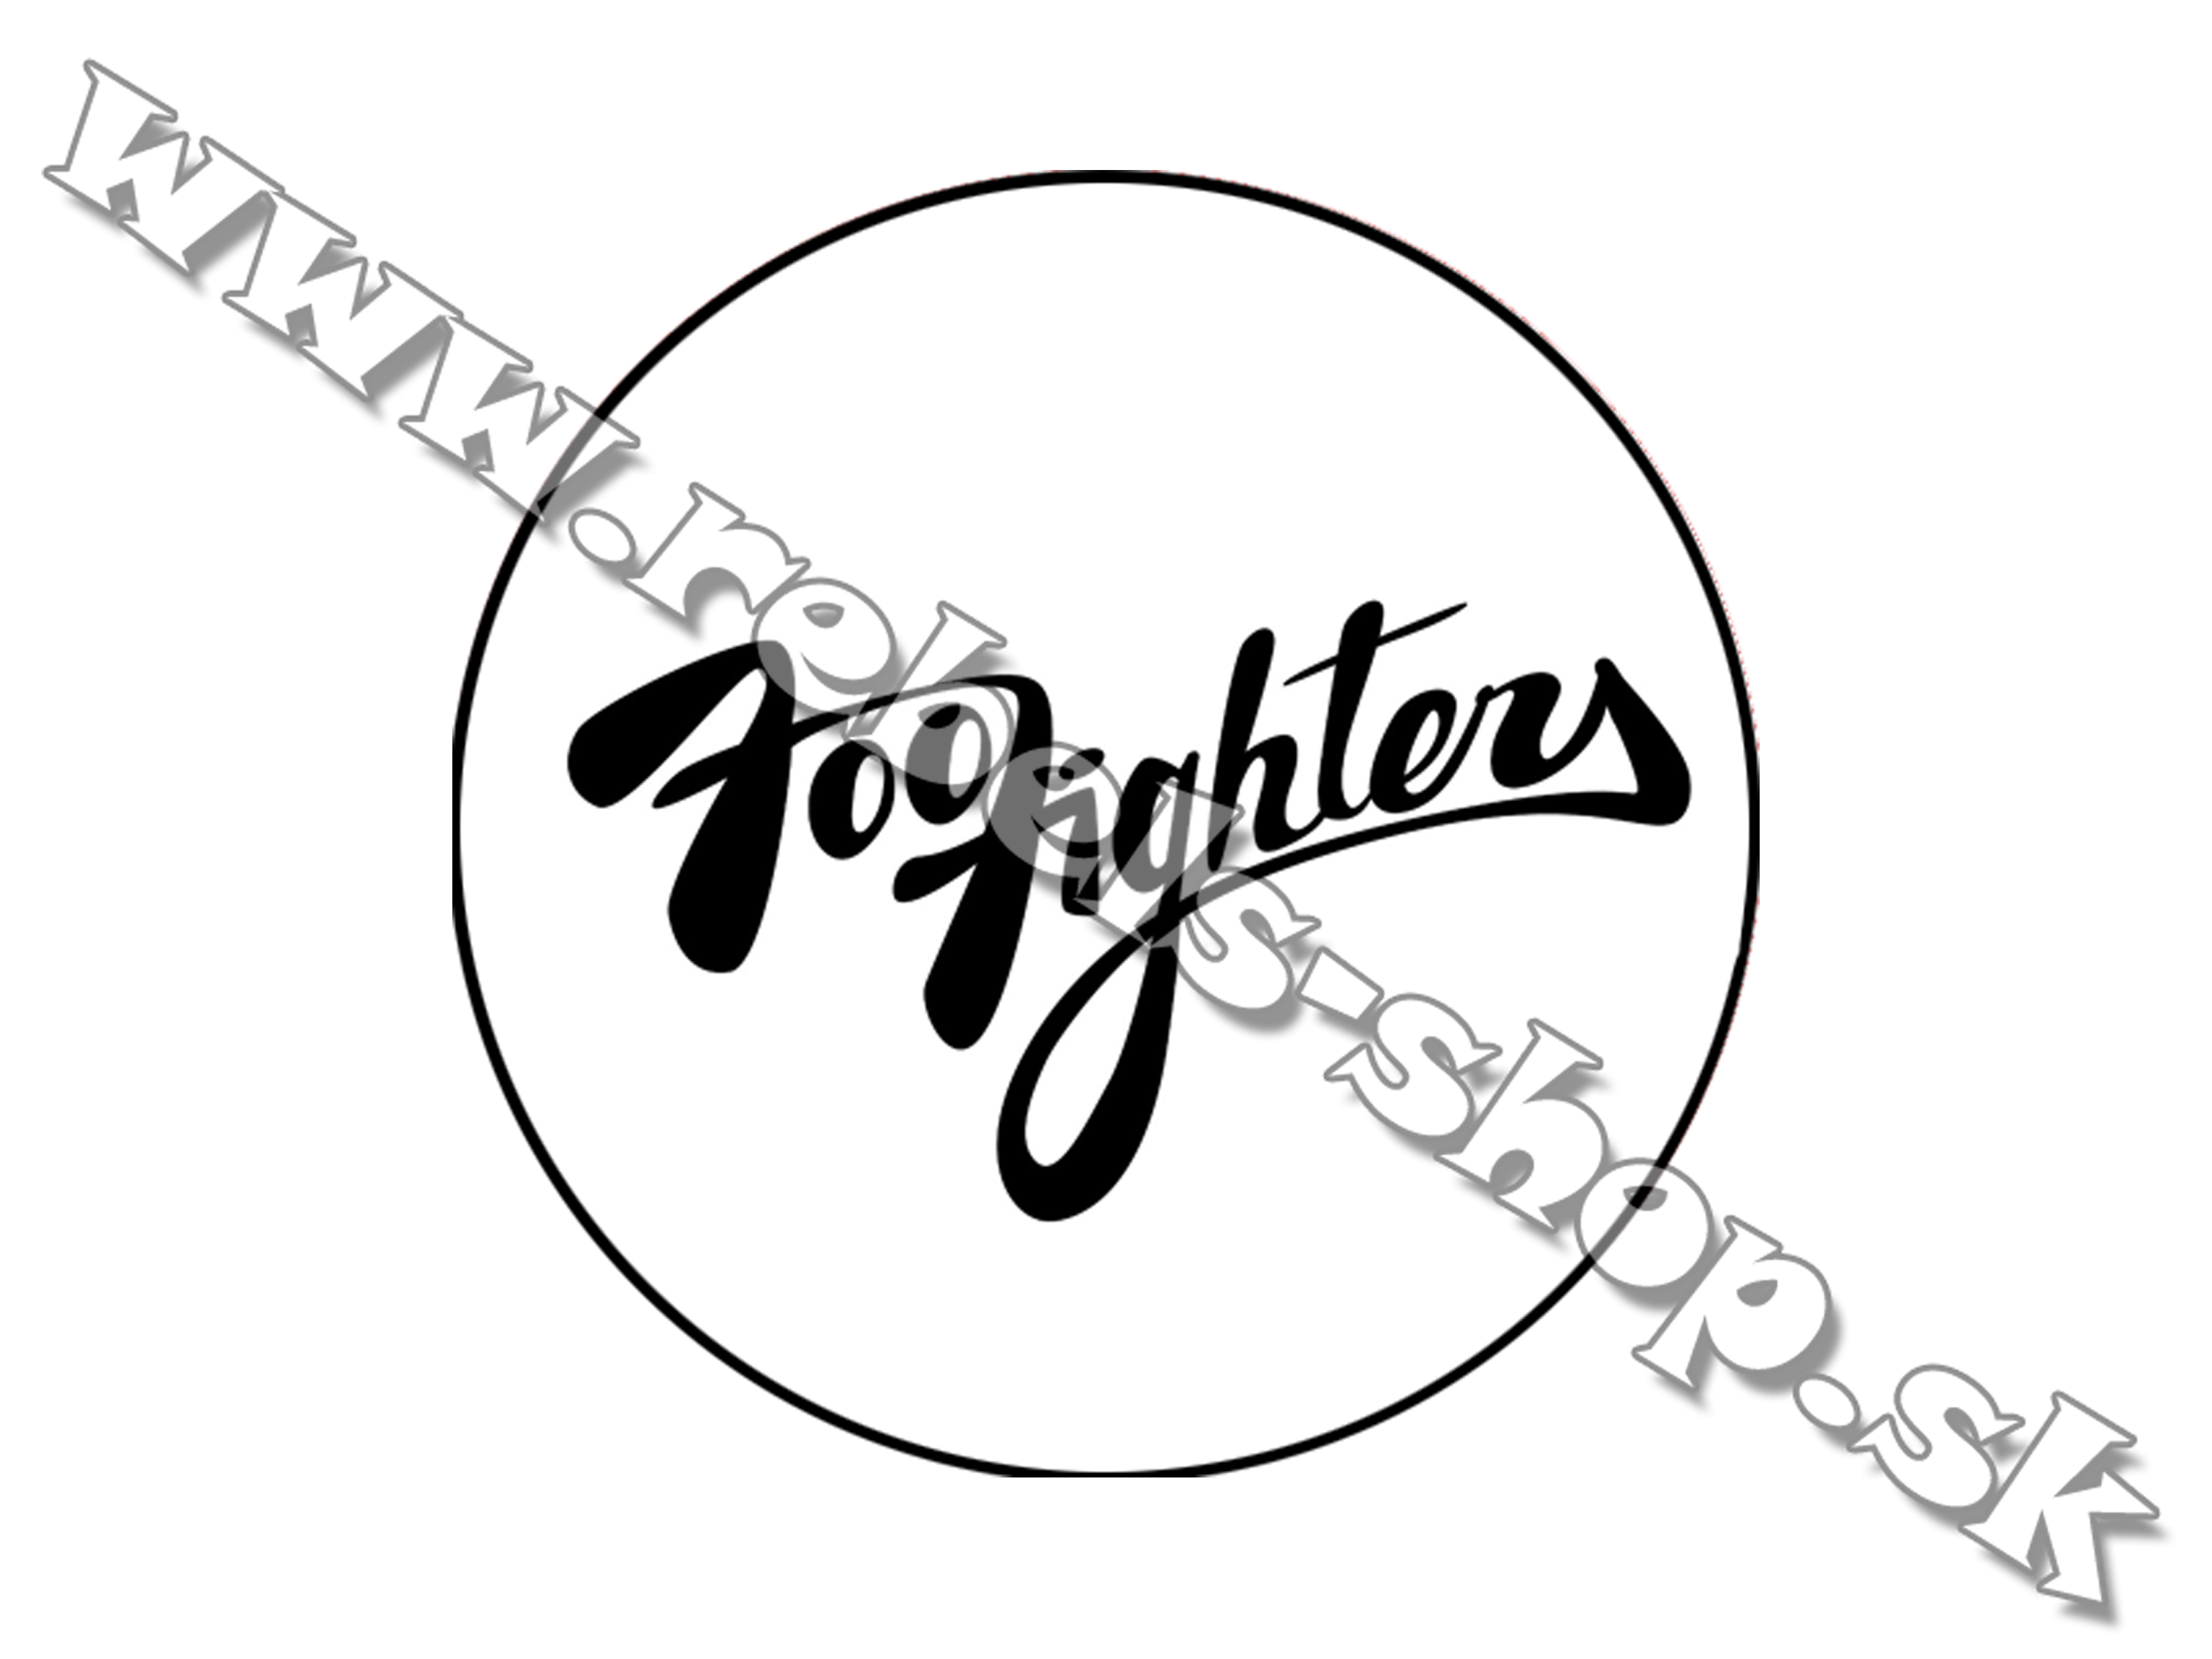 Odznak "Foo Fighters"